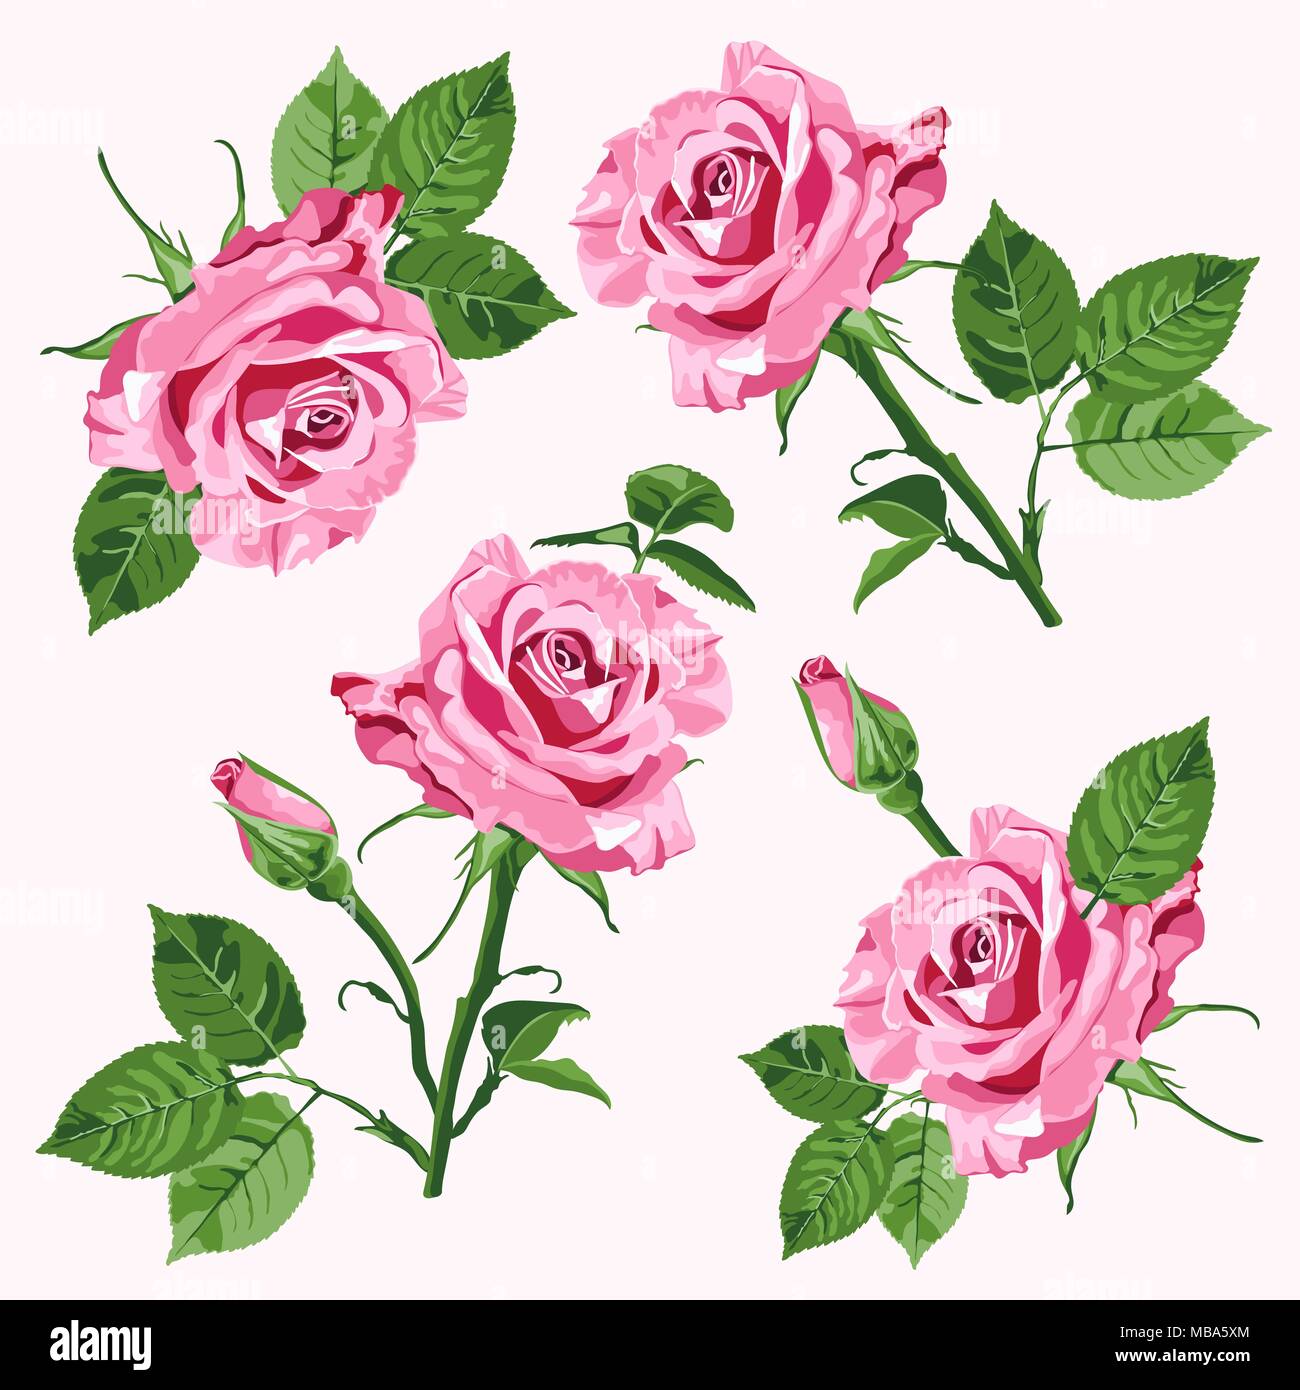 Vecteur rose roses et verts sans laisser sur le fond blanc Illustration de Vecteur